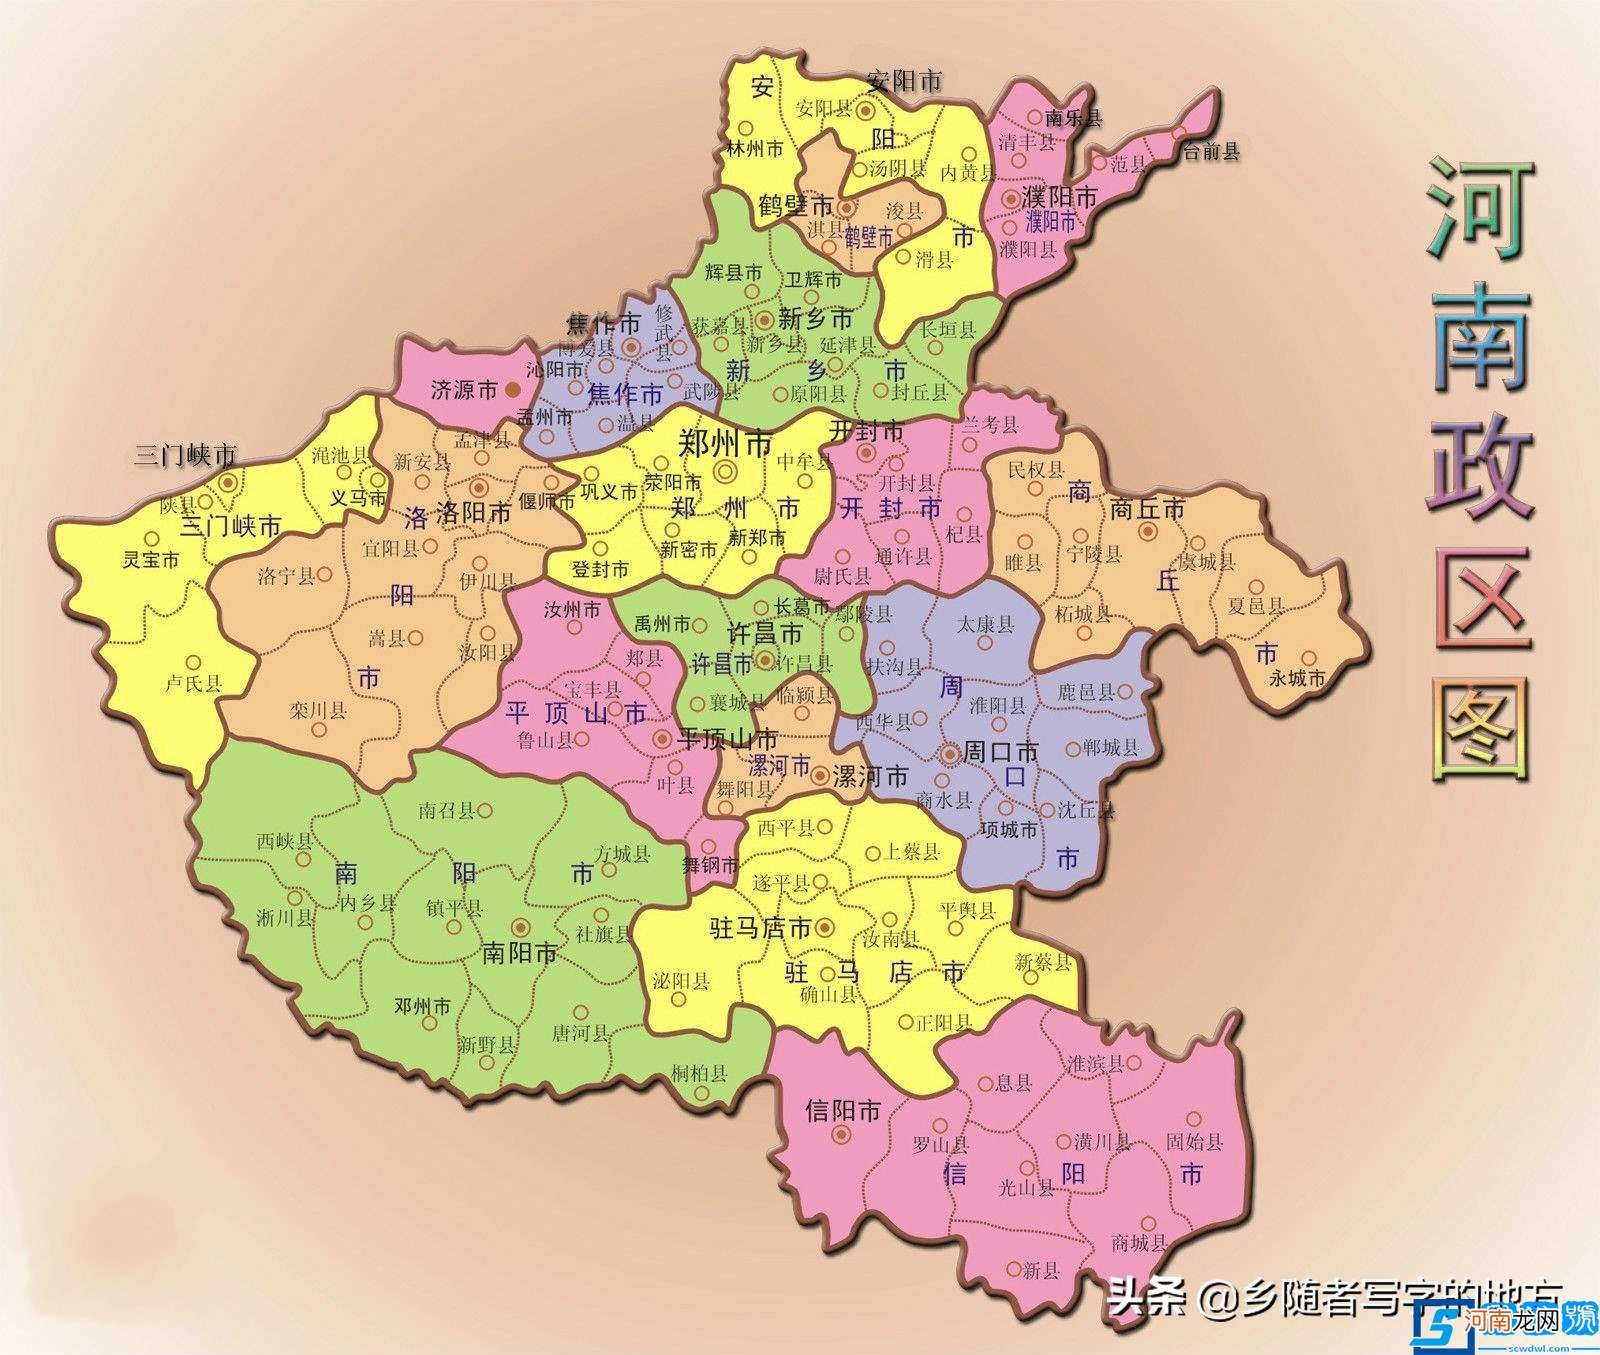 洛阳是哪个省的?河南省洛阳市行政区划图